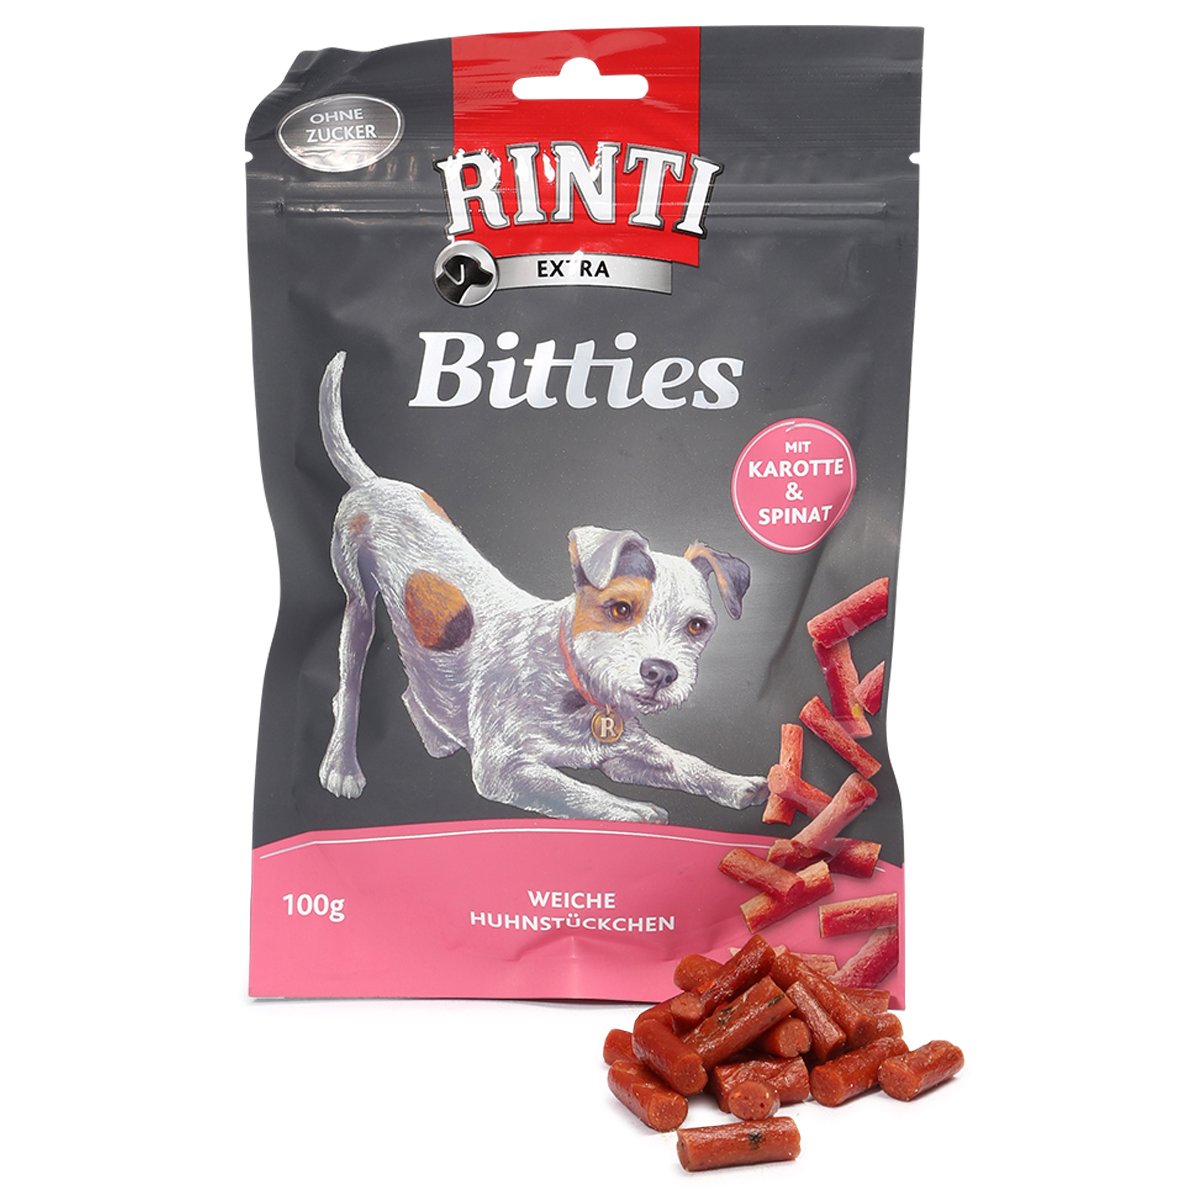 Rinti Extra Bitties mit Karotten und Spinat 6x100g